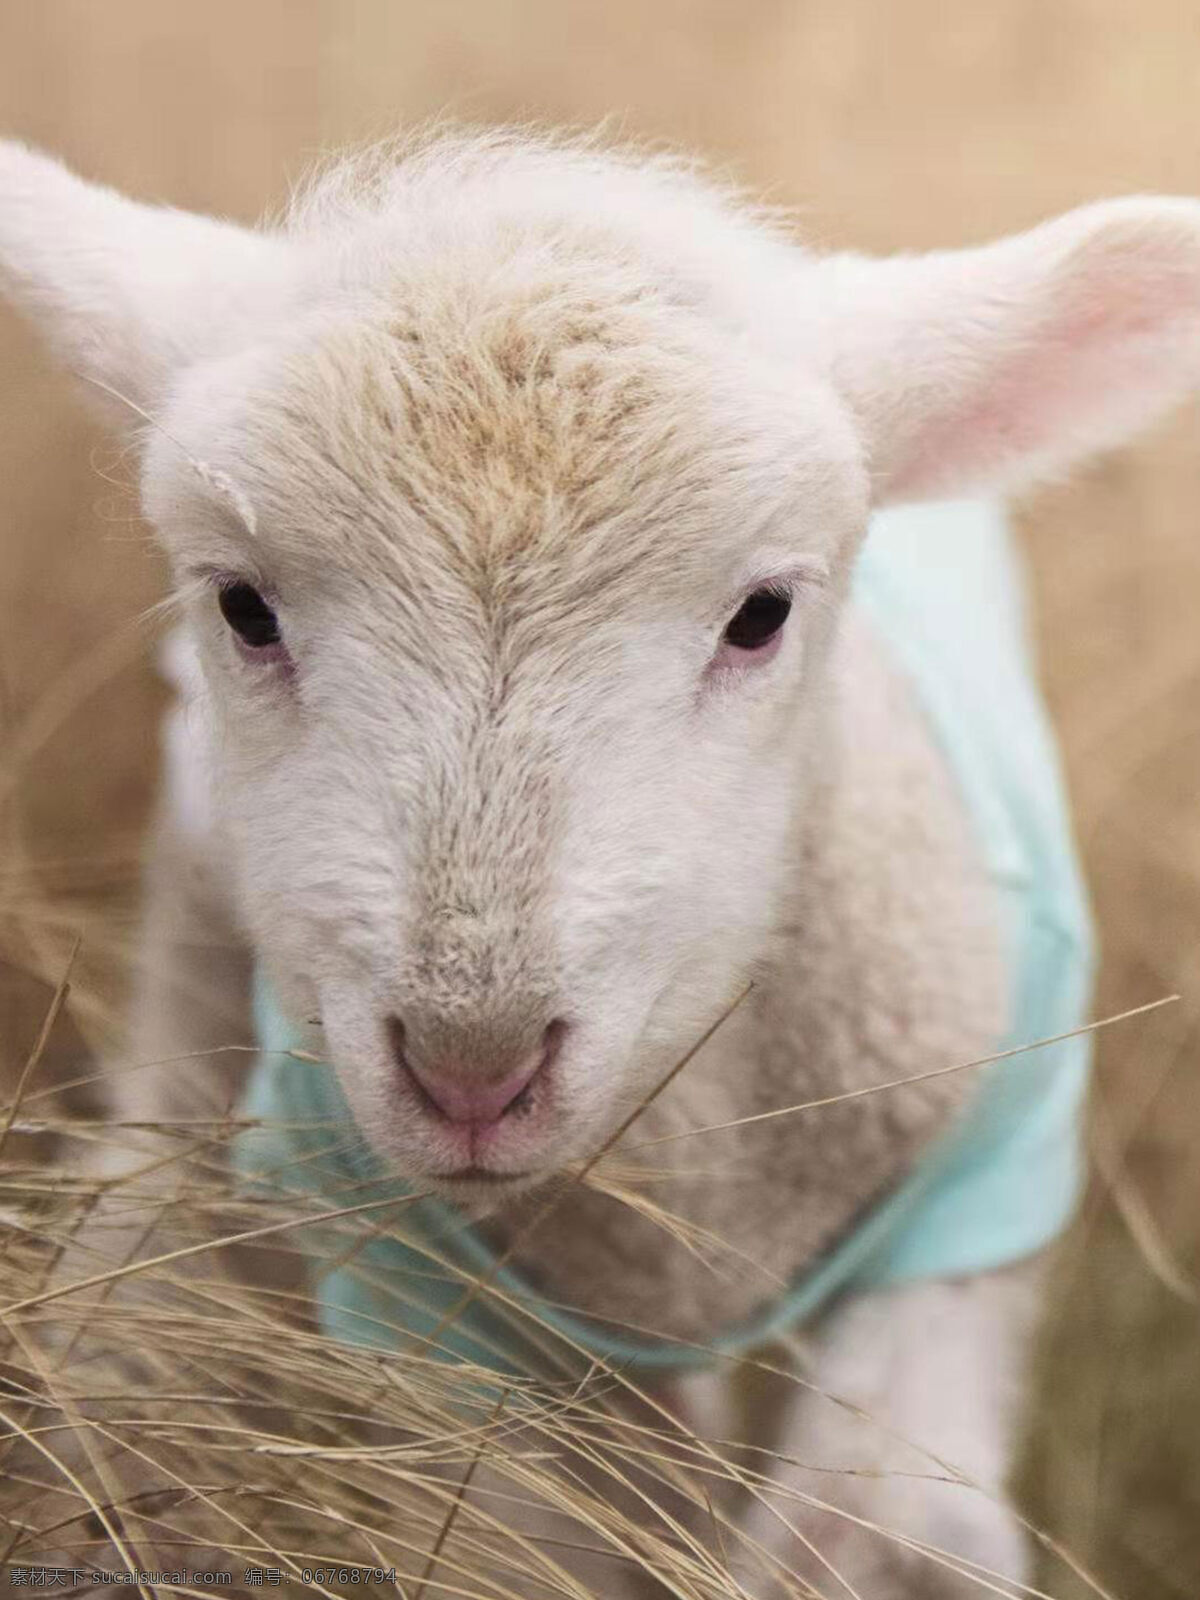 羊图片 羊 动物 小羊 可爱 生物世界 家禽家畜